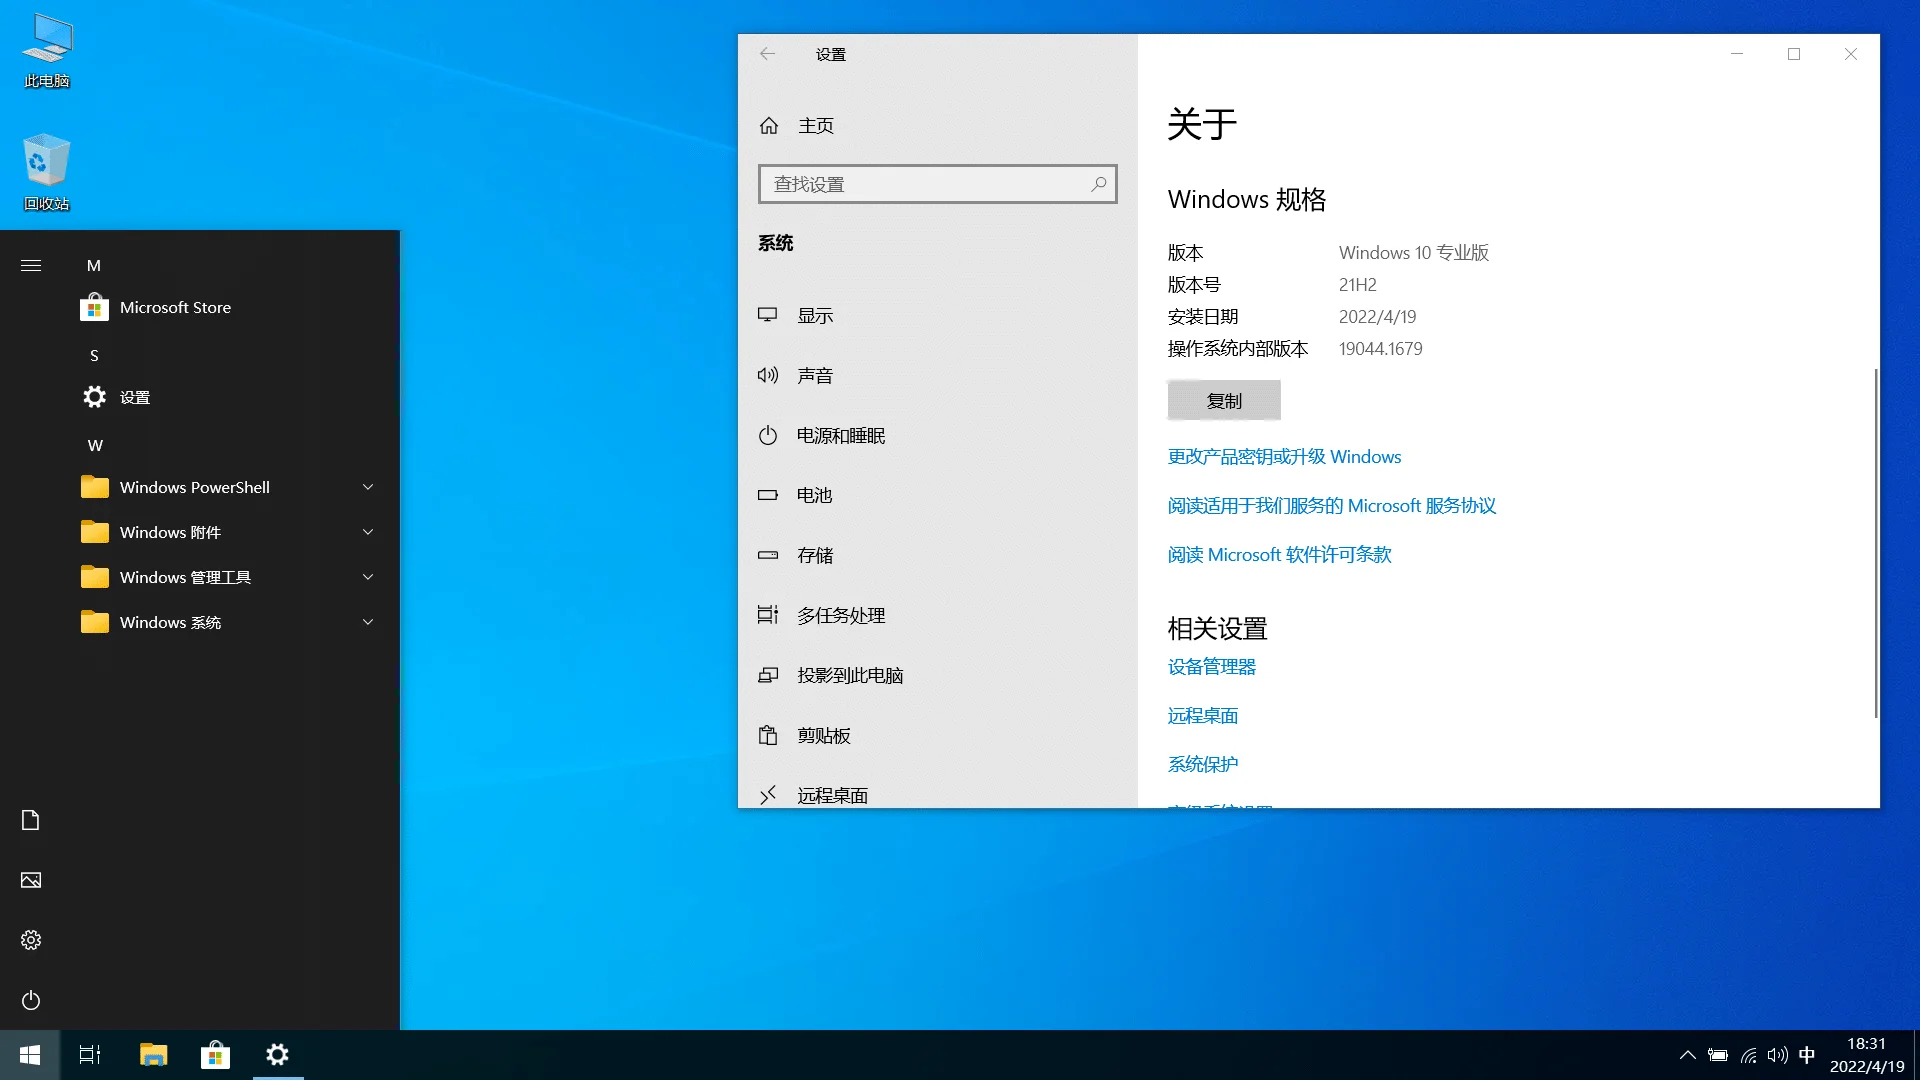 【果核】Windows 10 Pro 21H2(19044.1679) 优化精简版